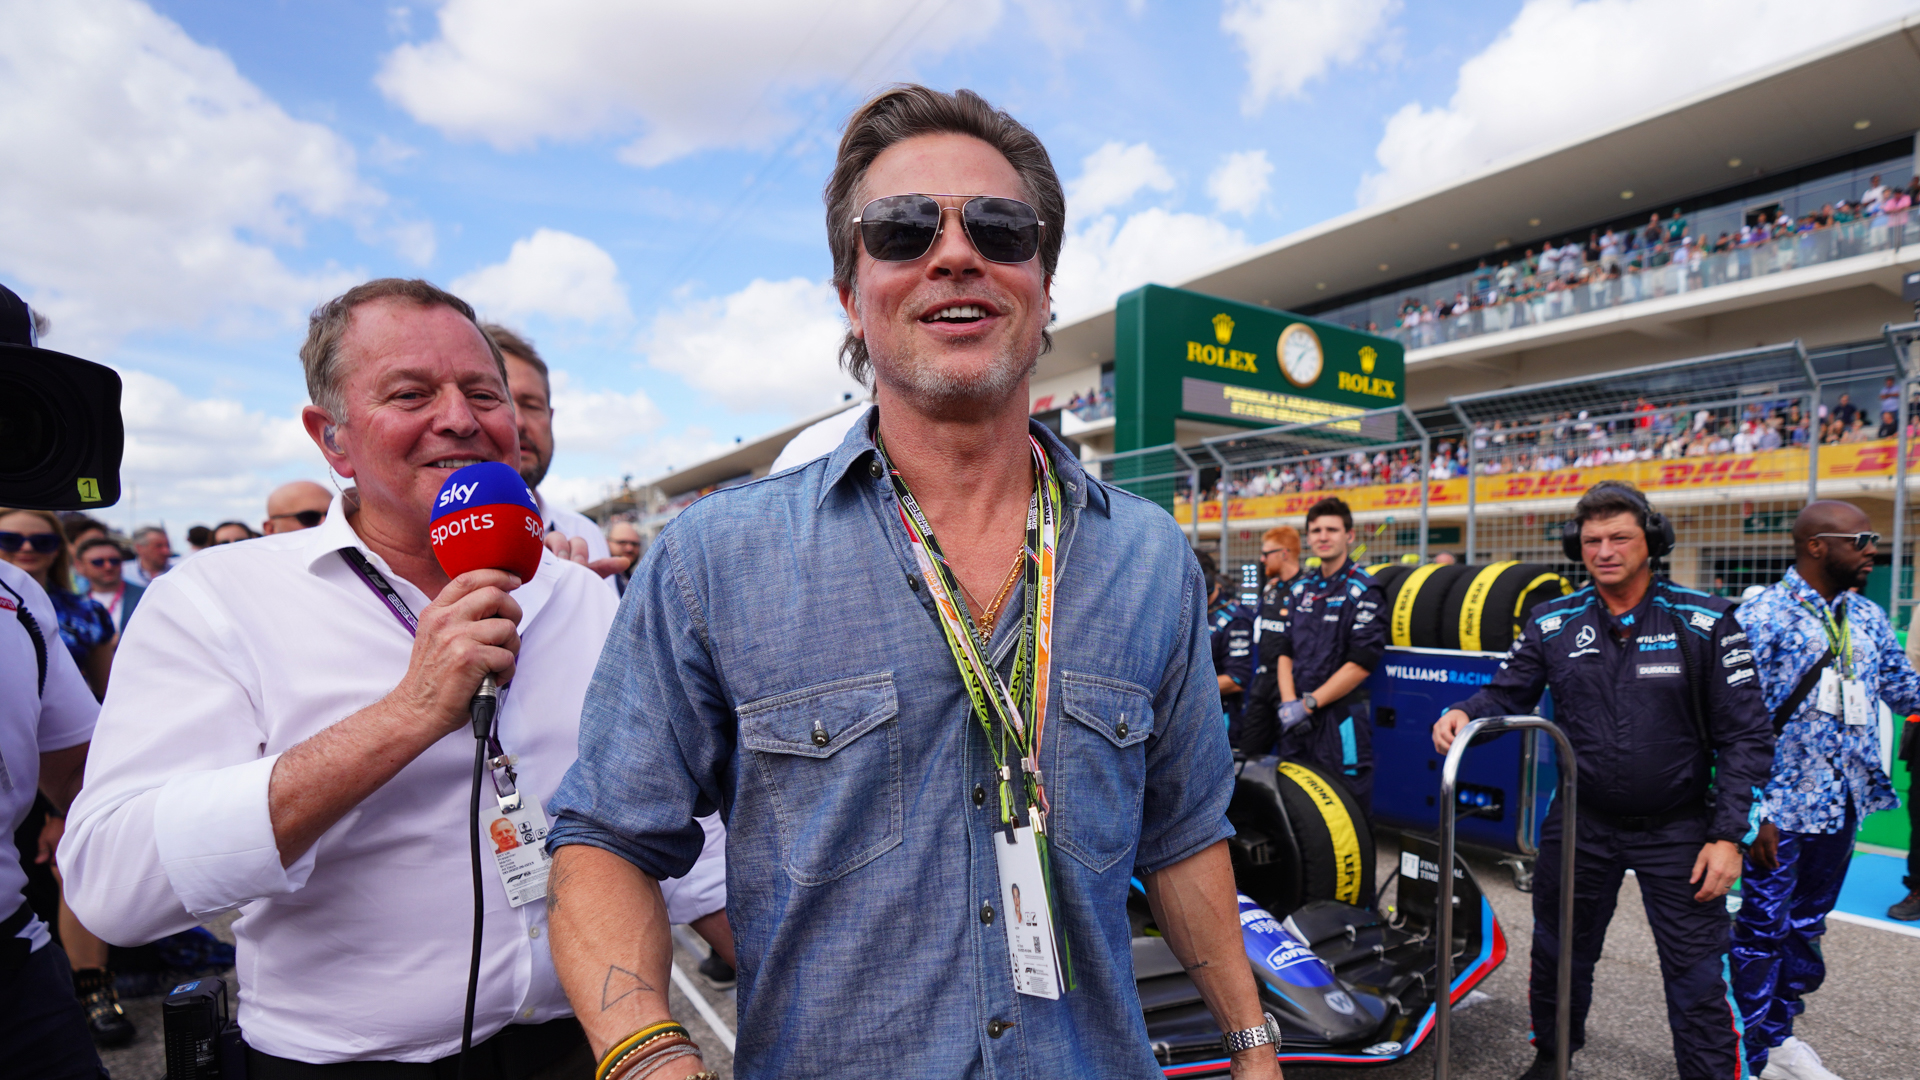 The Brad Pitt, Martin Brundle F1 Grid Walk Snub Controversy Is Dumb